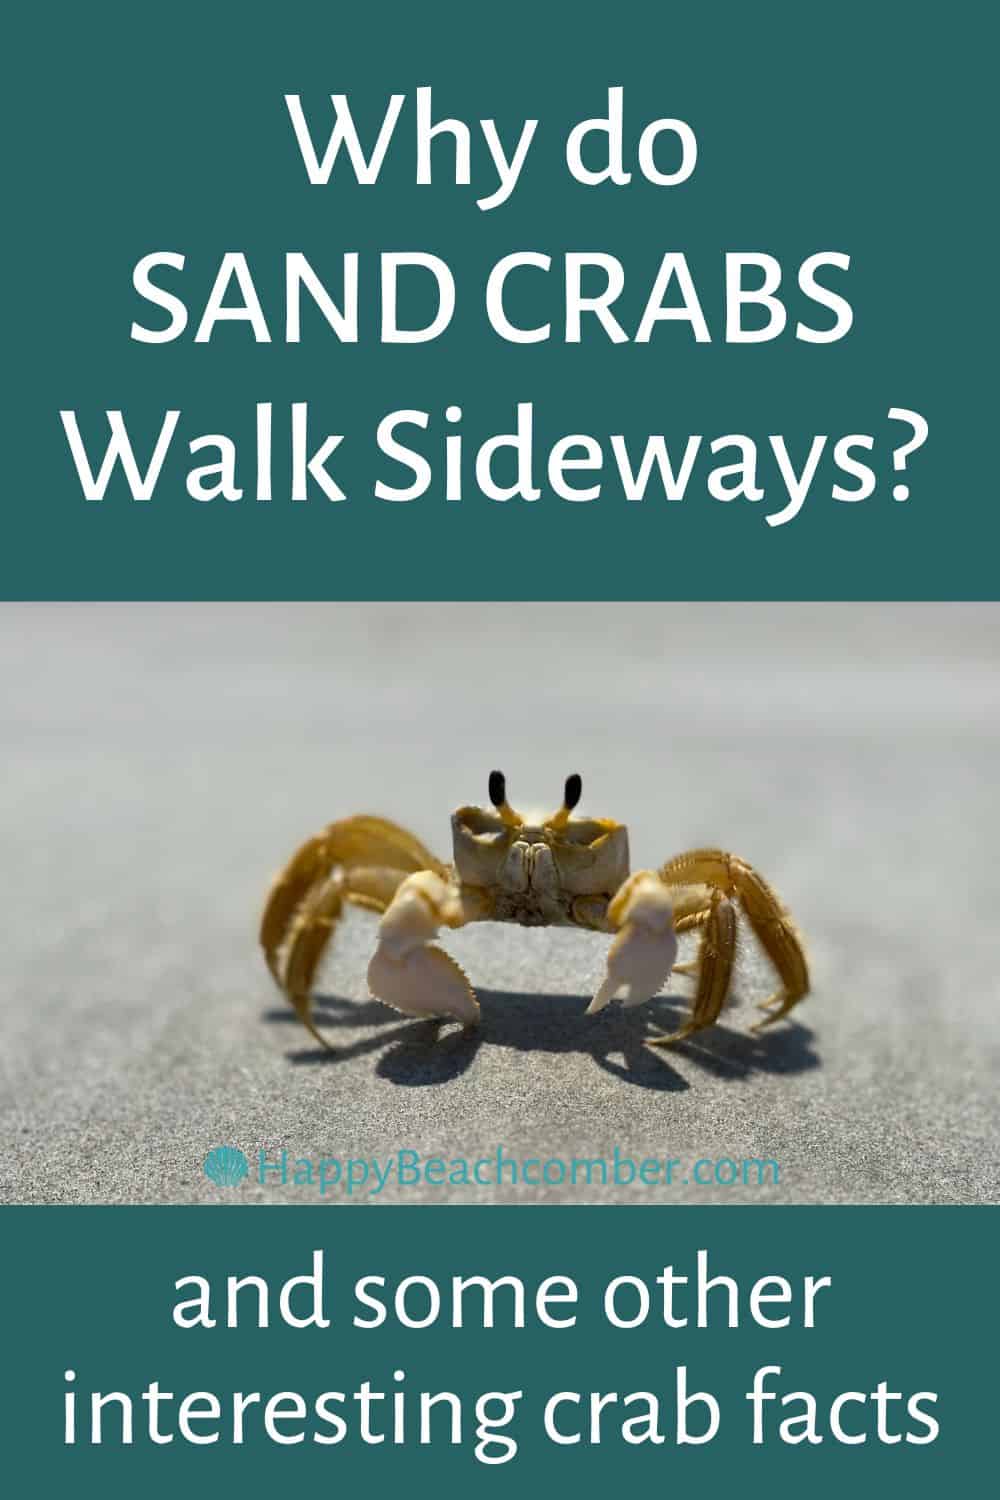 Why do sand crabs walk sideways?